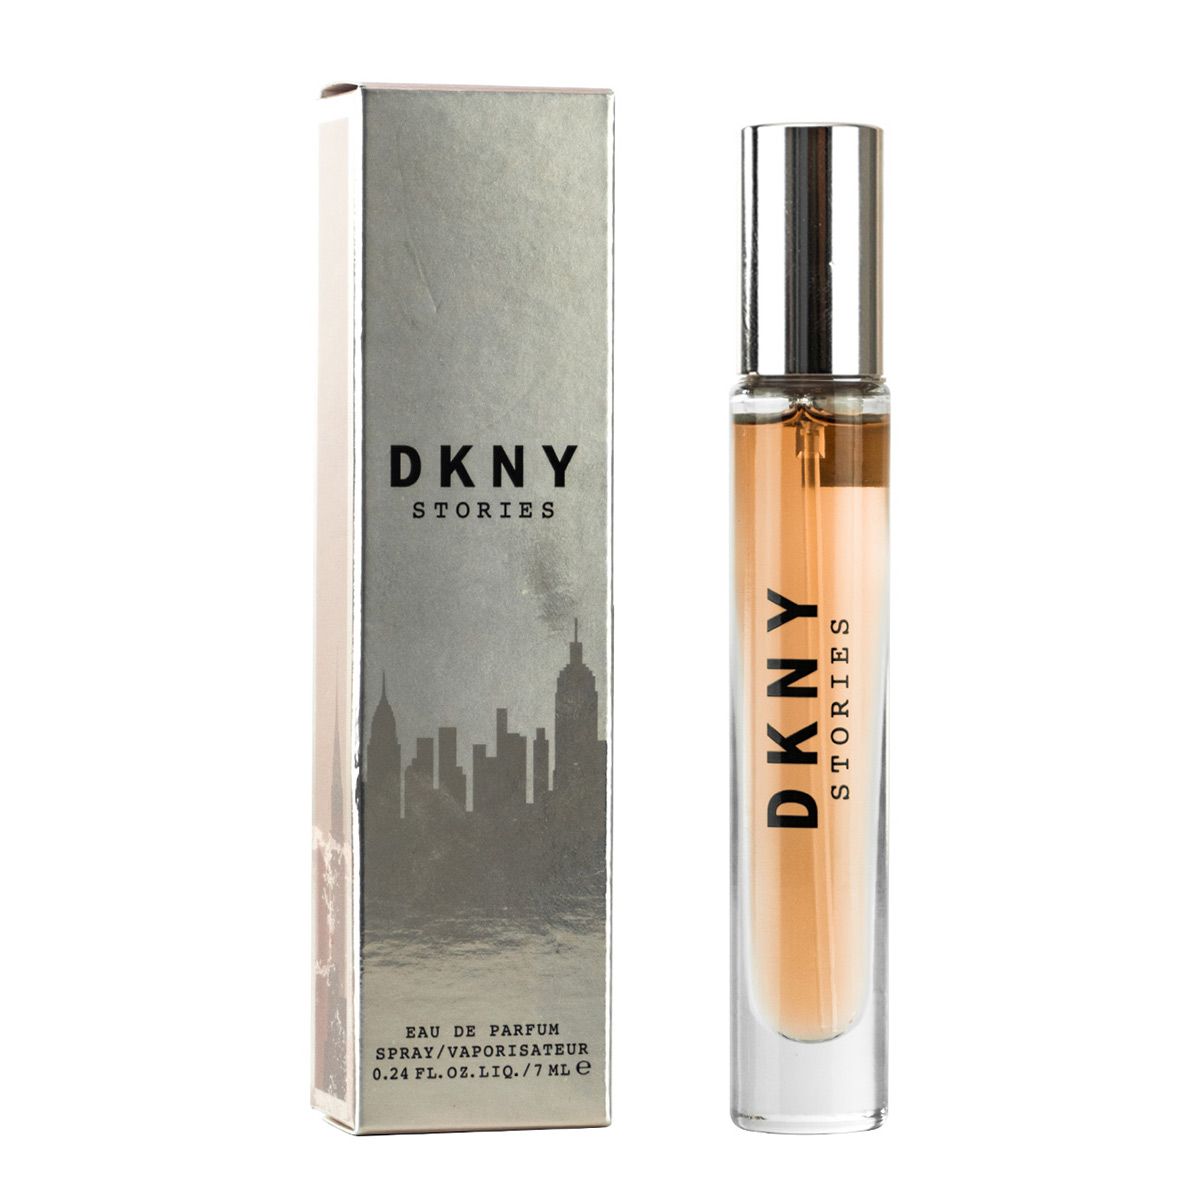  DKNY Stories Travel Spray 